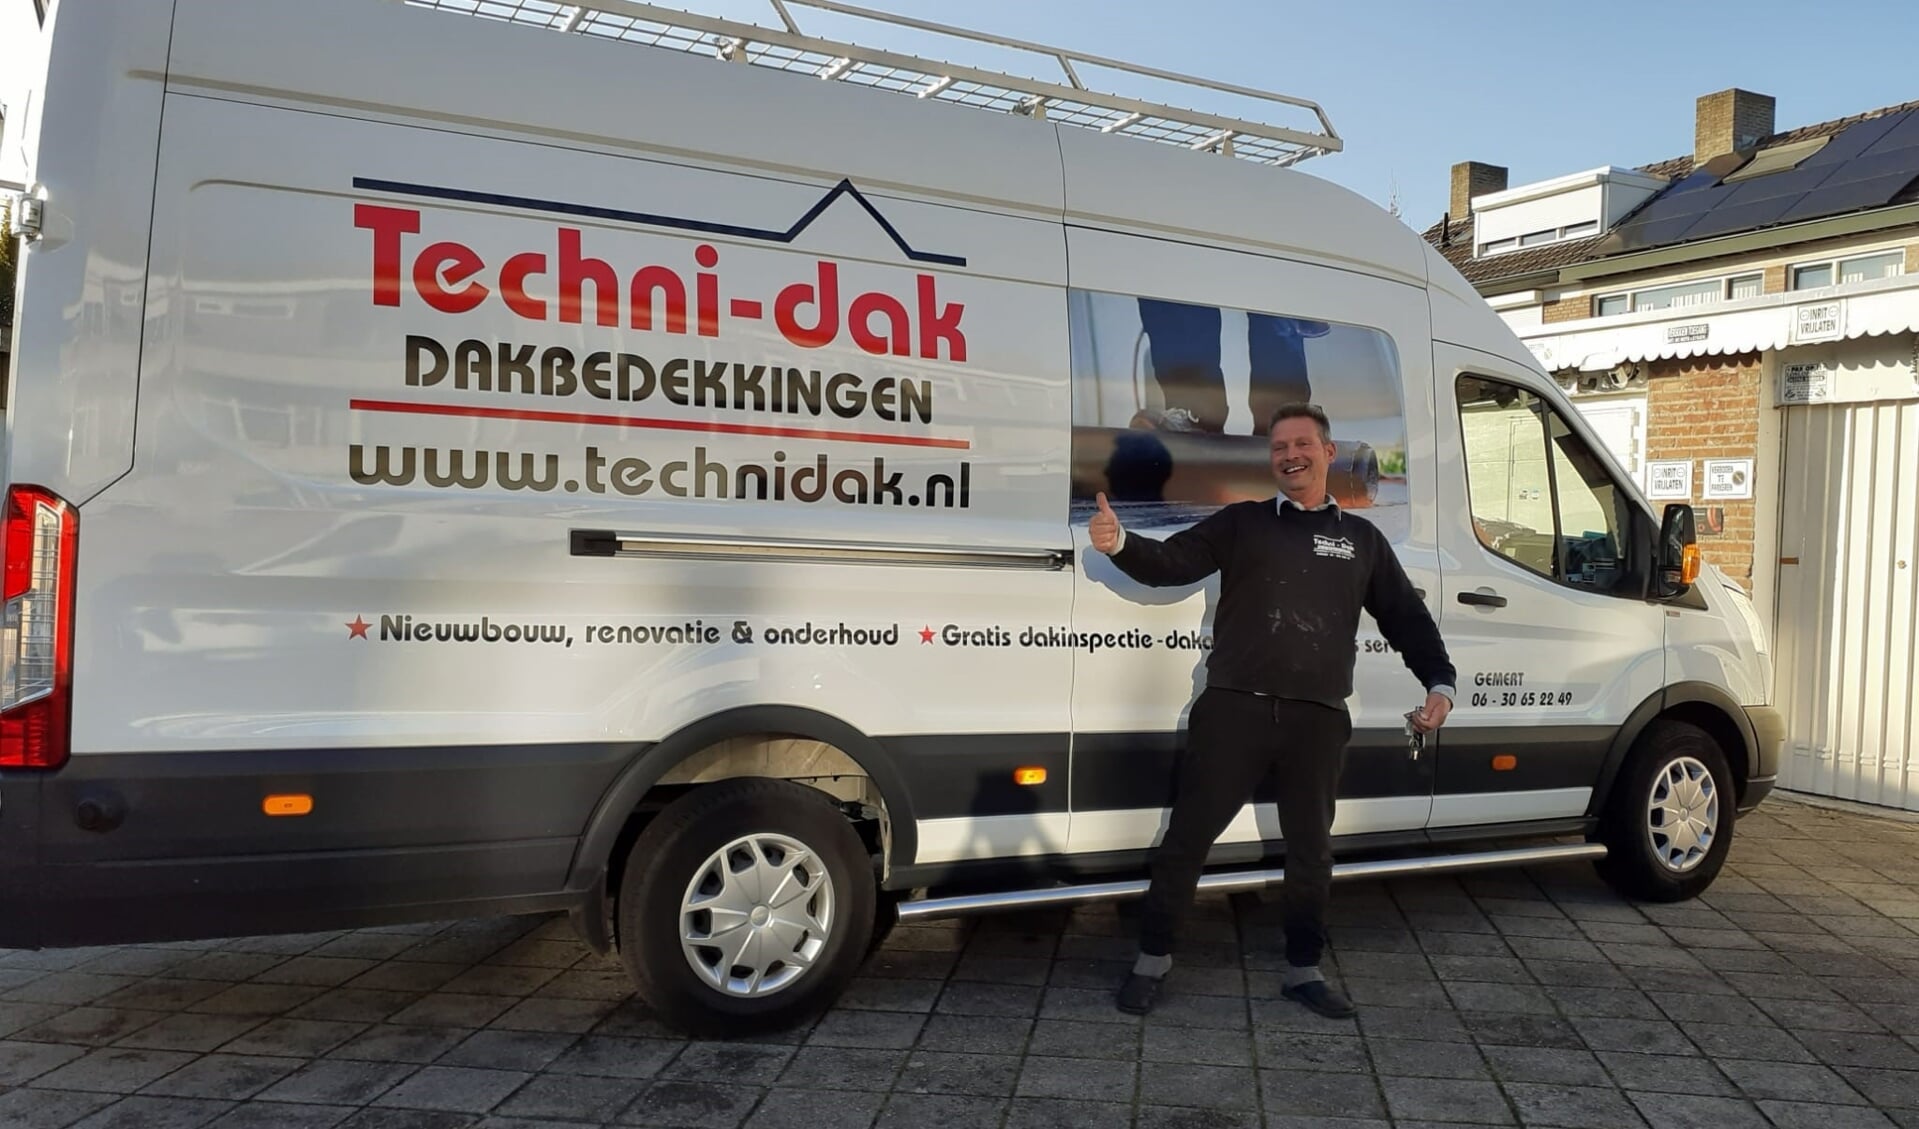 Techni-dak Dakbedekkingen biedt 10 jaar garantie op materialen en uitvoering van werkzaamheden. Op de foto Stan van Schijndel.